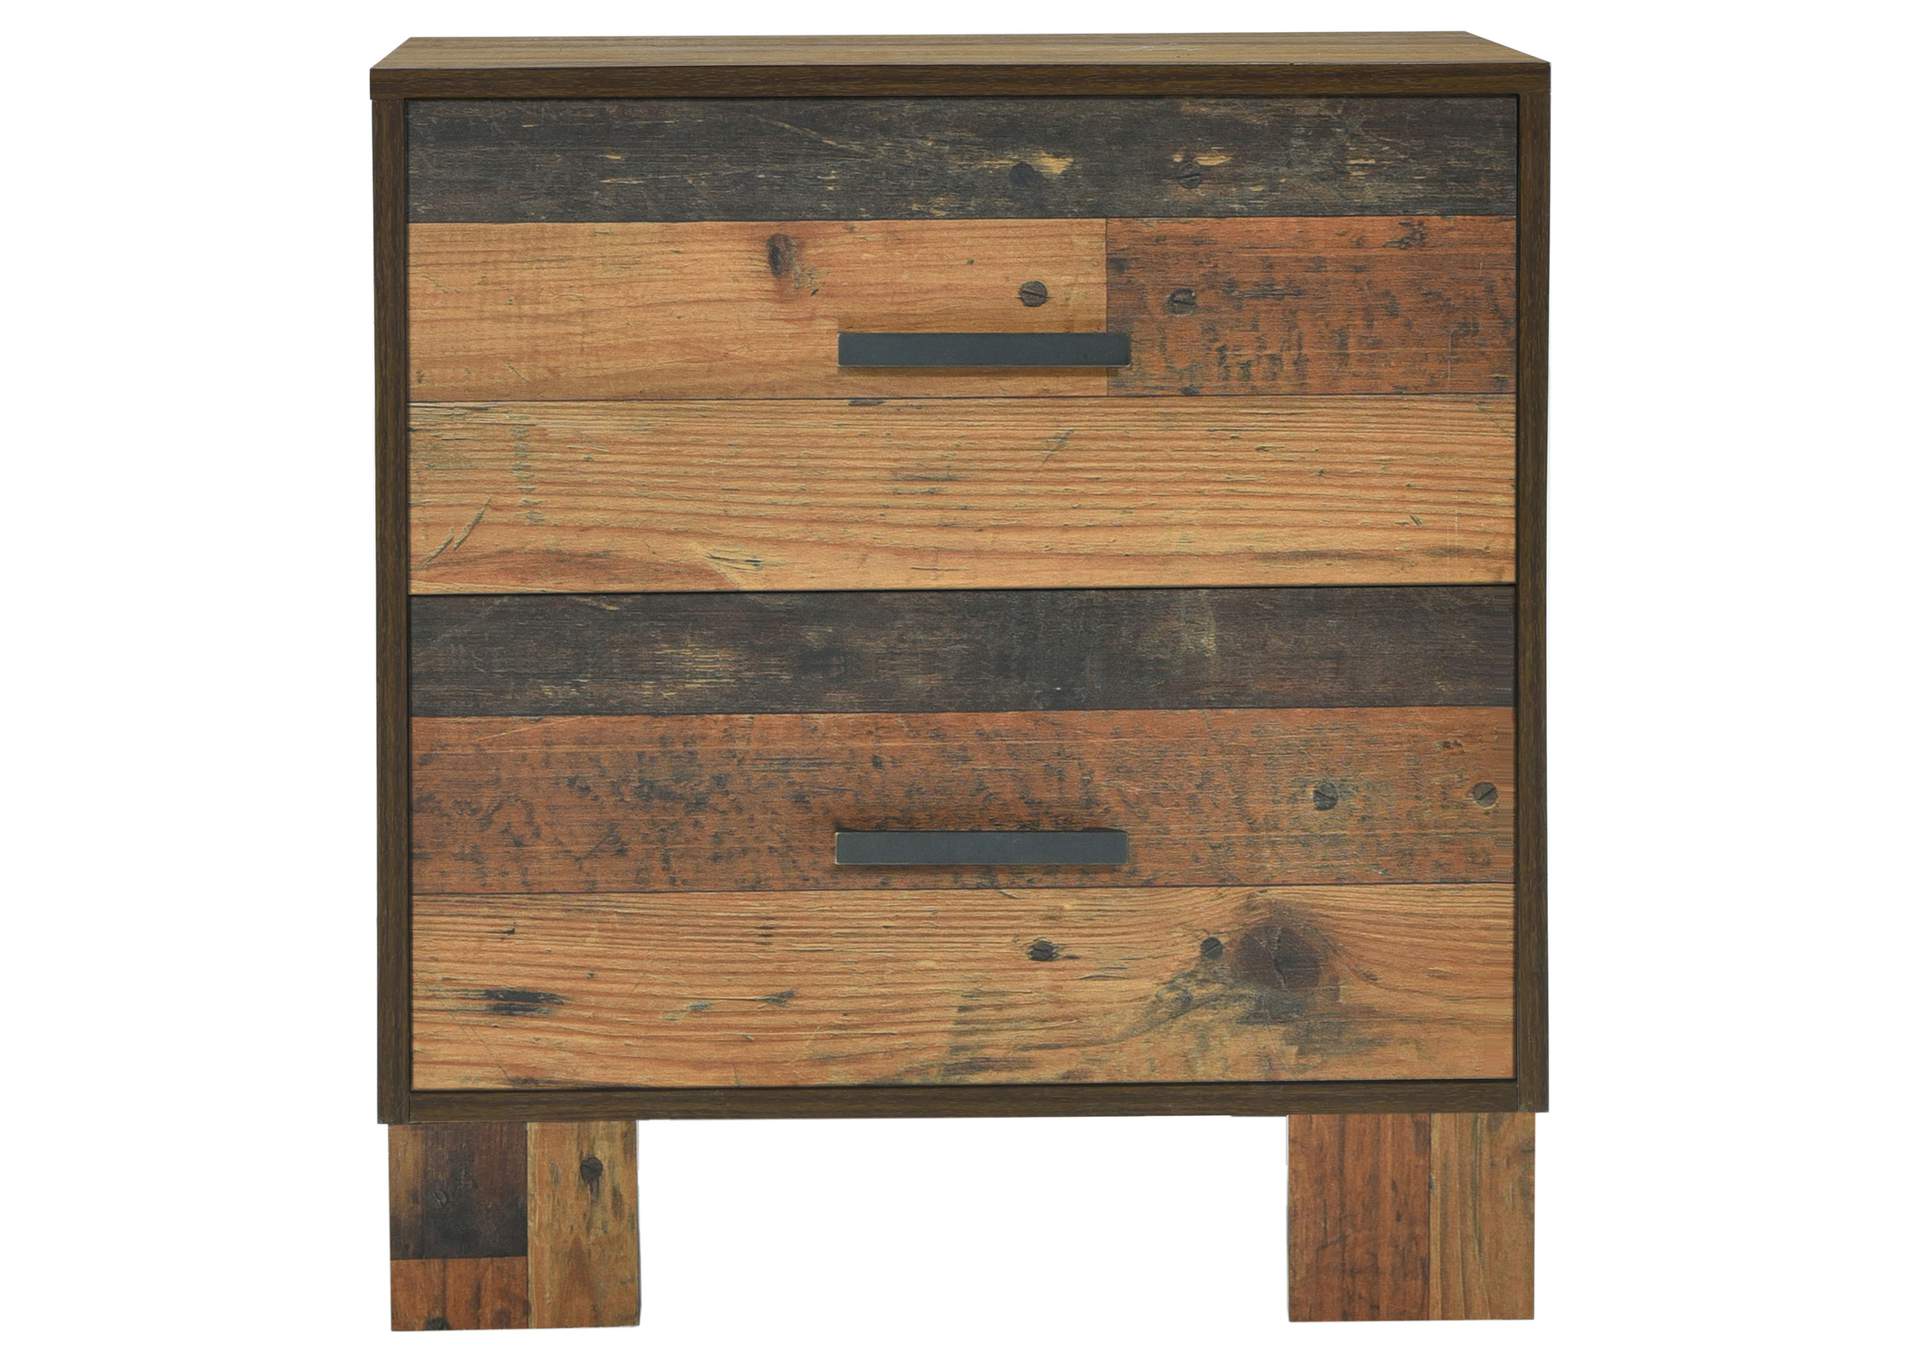 Sidney 4-piece Queen Panel Bedroom Set Rustic Pine,Coaster Furniture